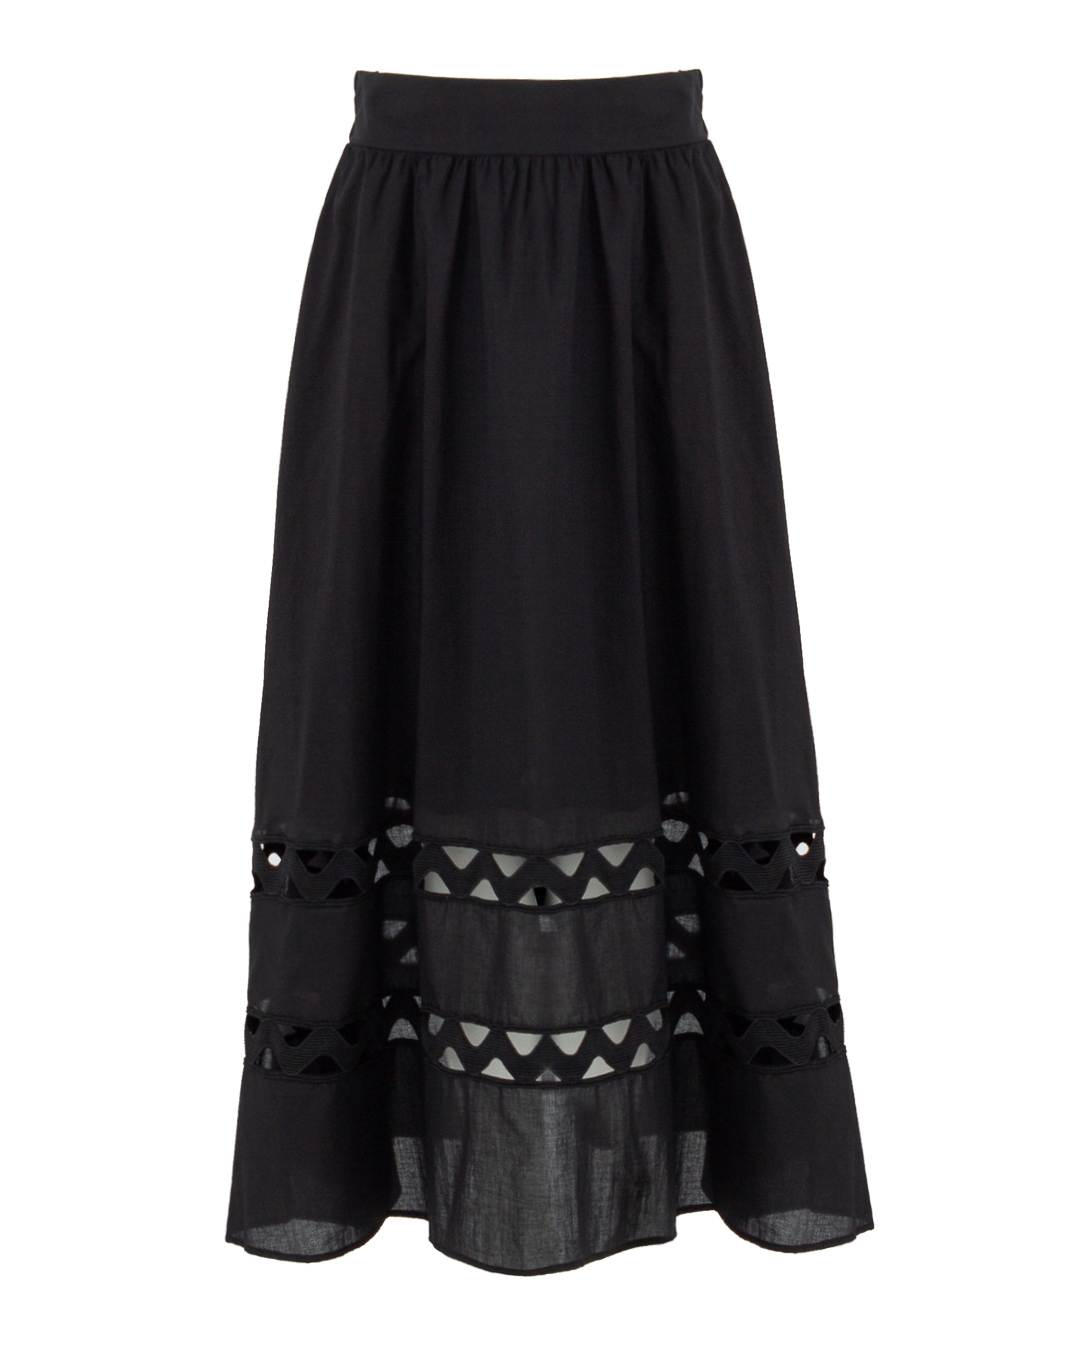 юбка ICONA BY KAOS PP5LE013 черный 40, размер 40 - фото 1